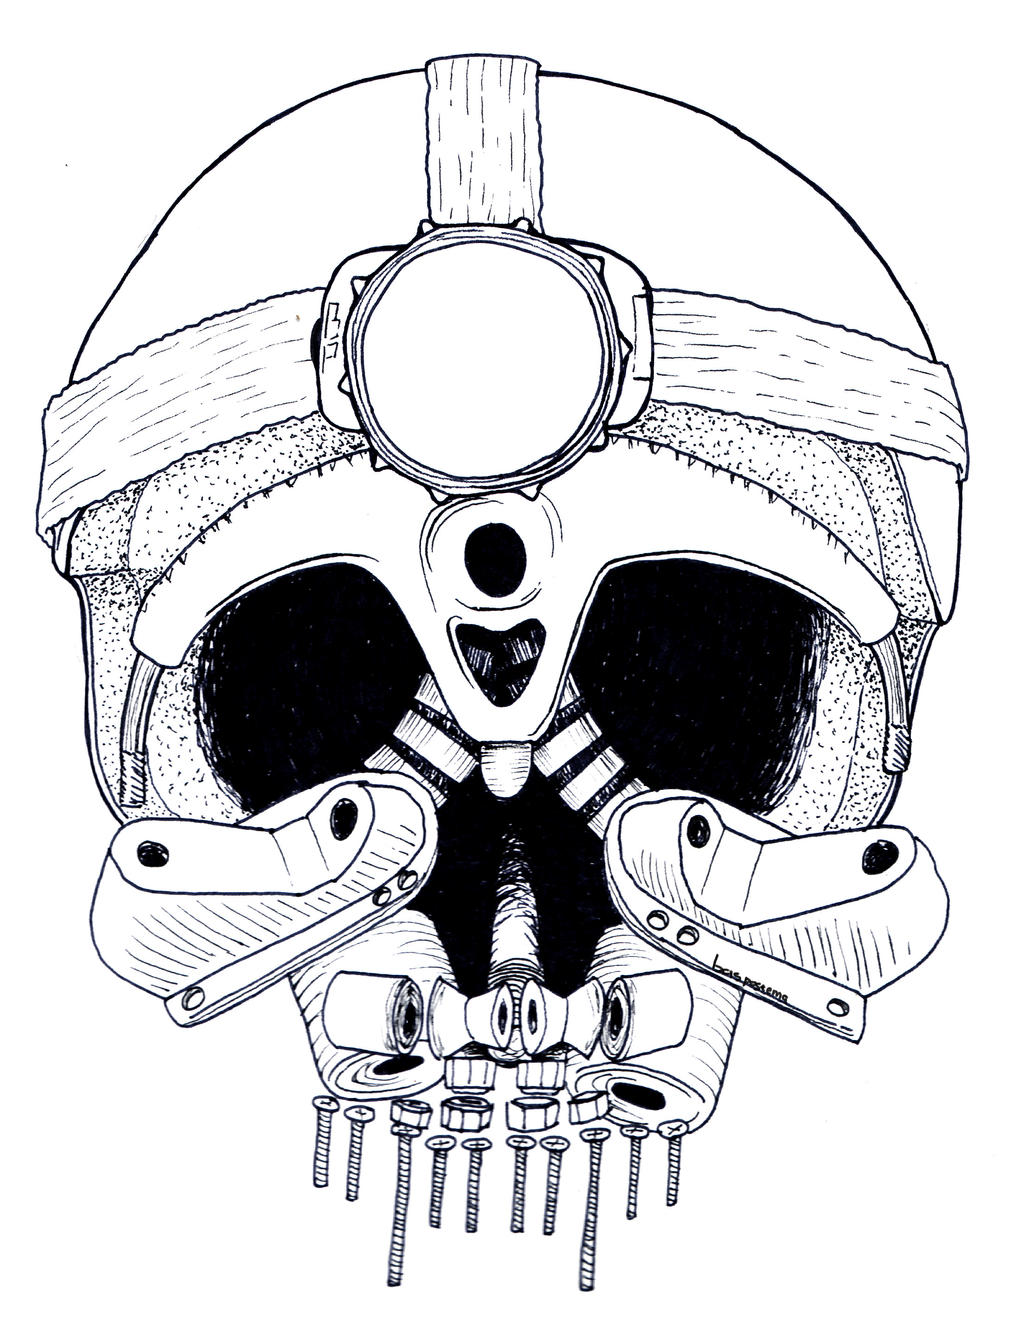 Skate/skull